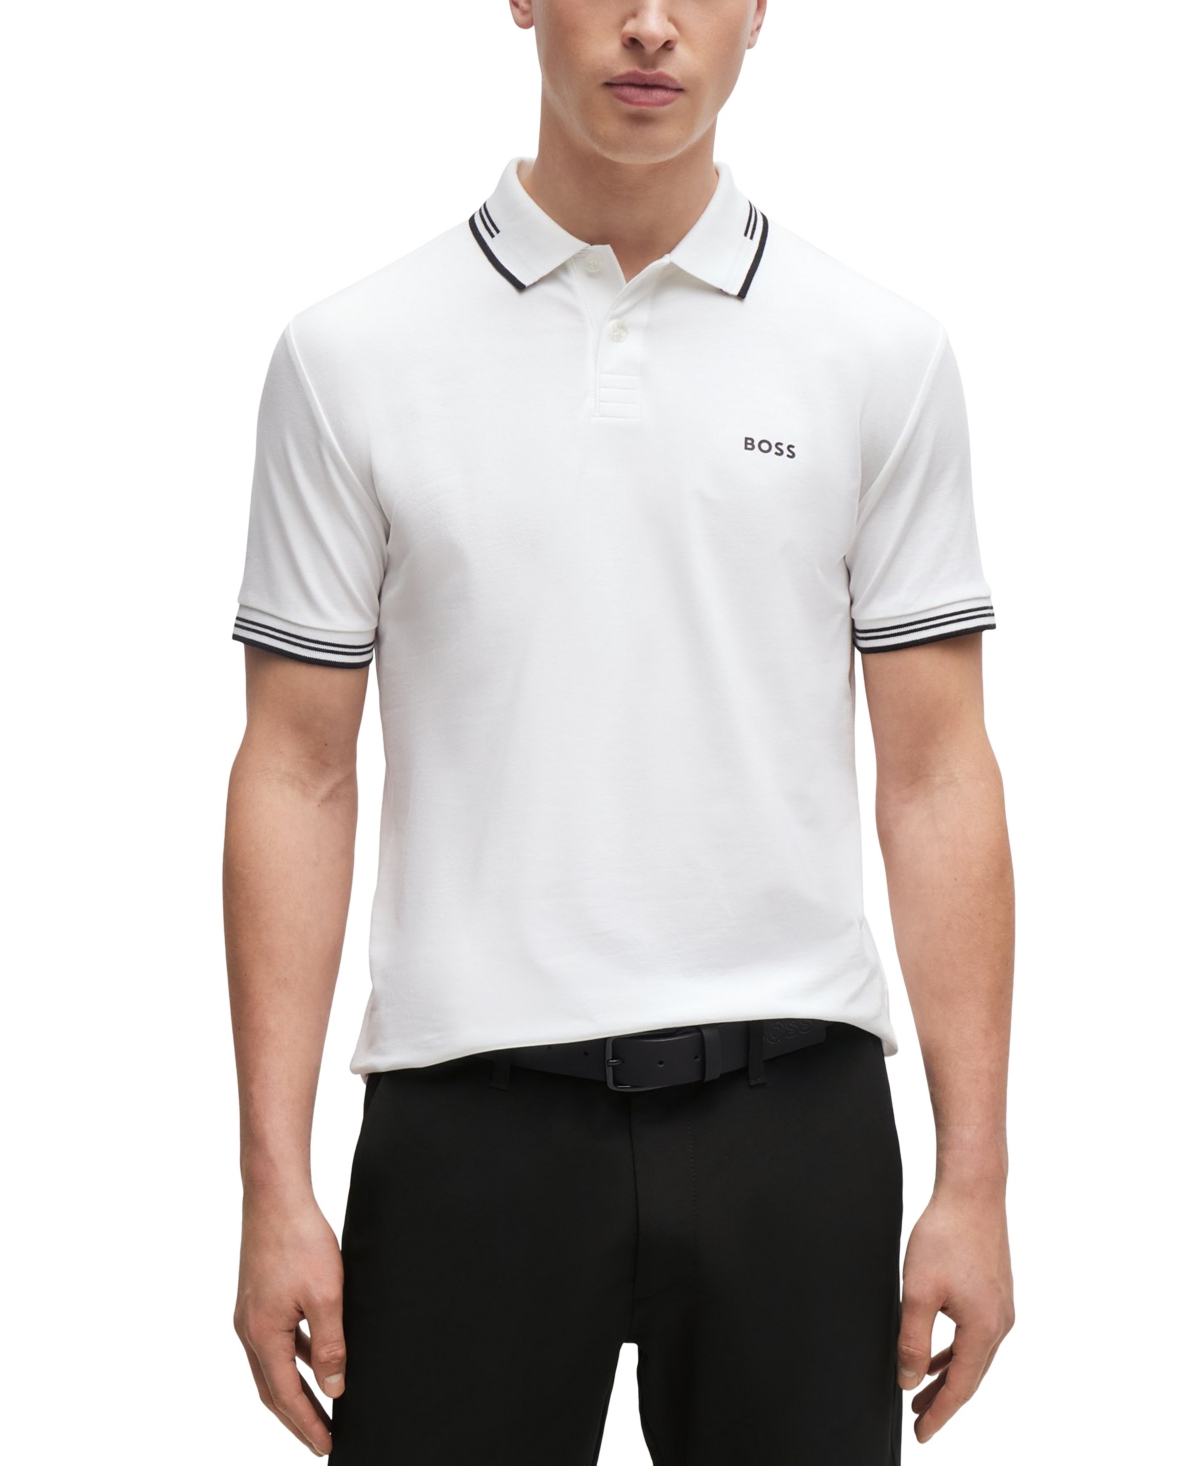 Boss by Hugo Boss Men's Branded Slim-Fit Polo Shirt - White